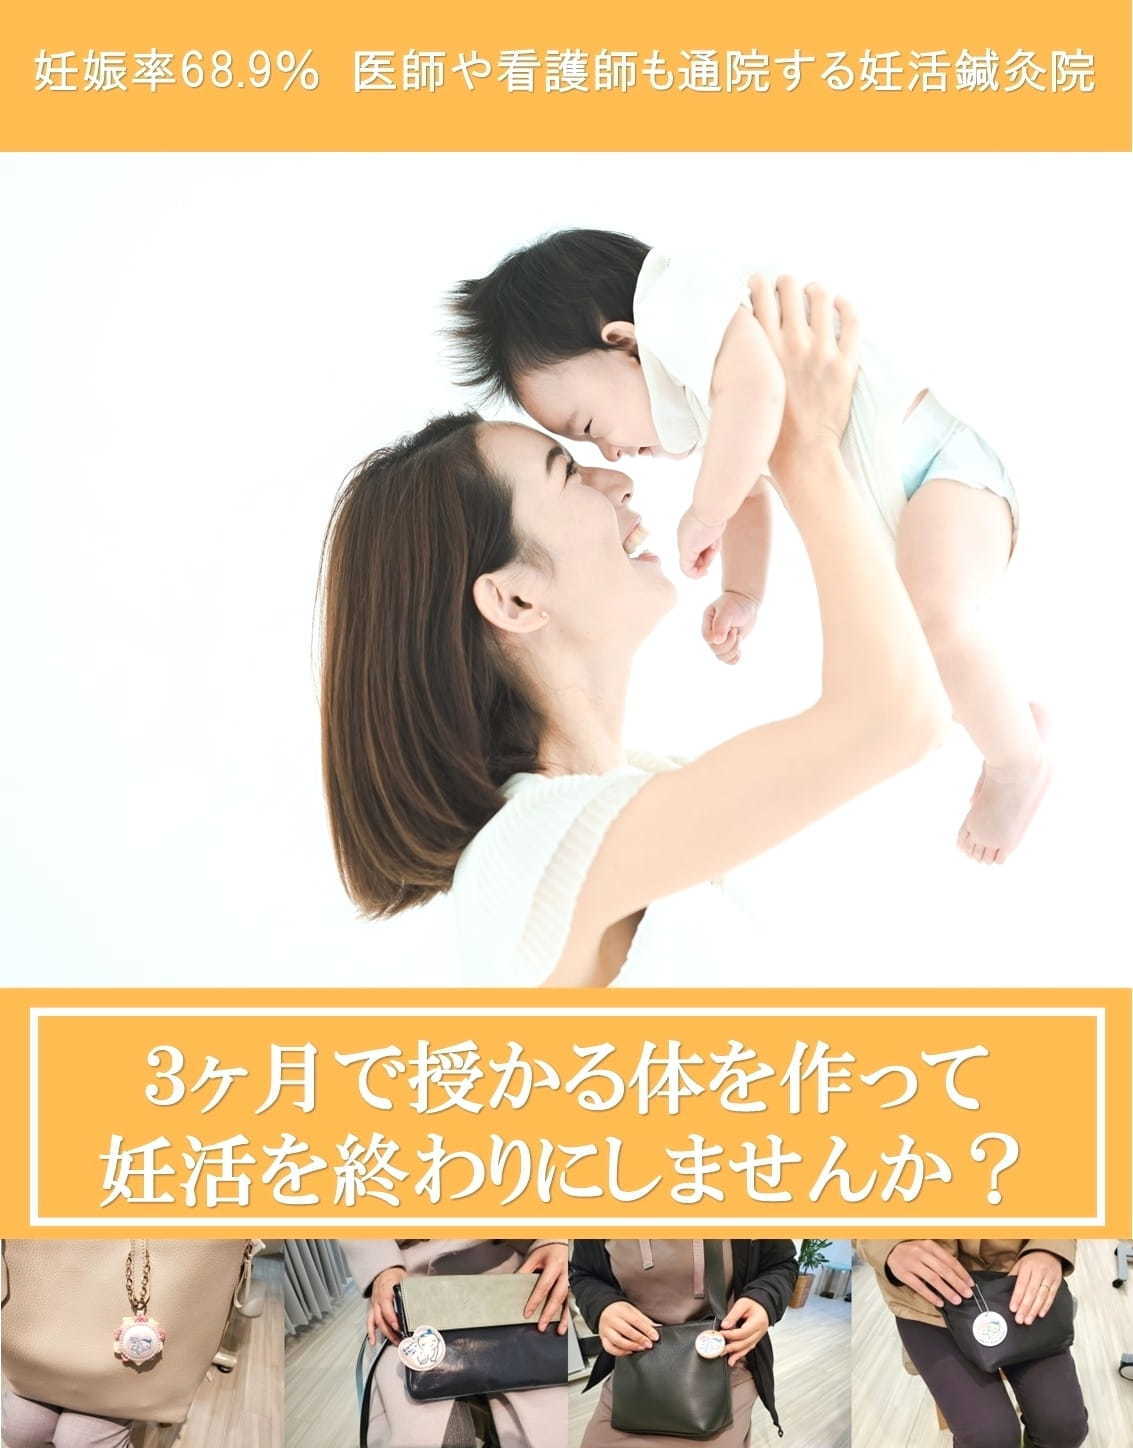 赤ちゃんを抱っこしている写真